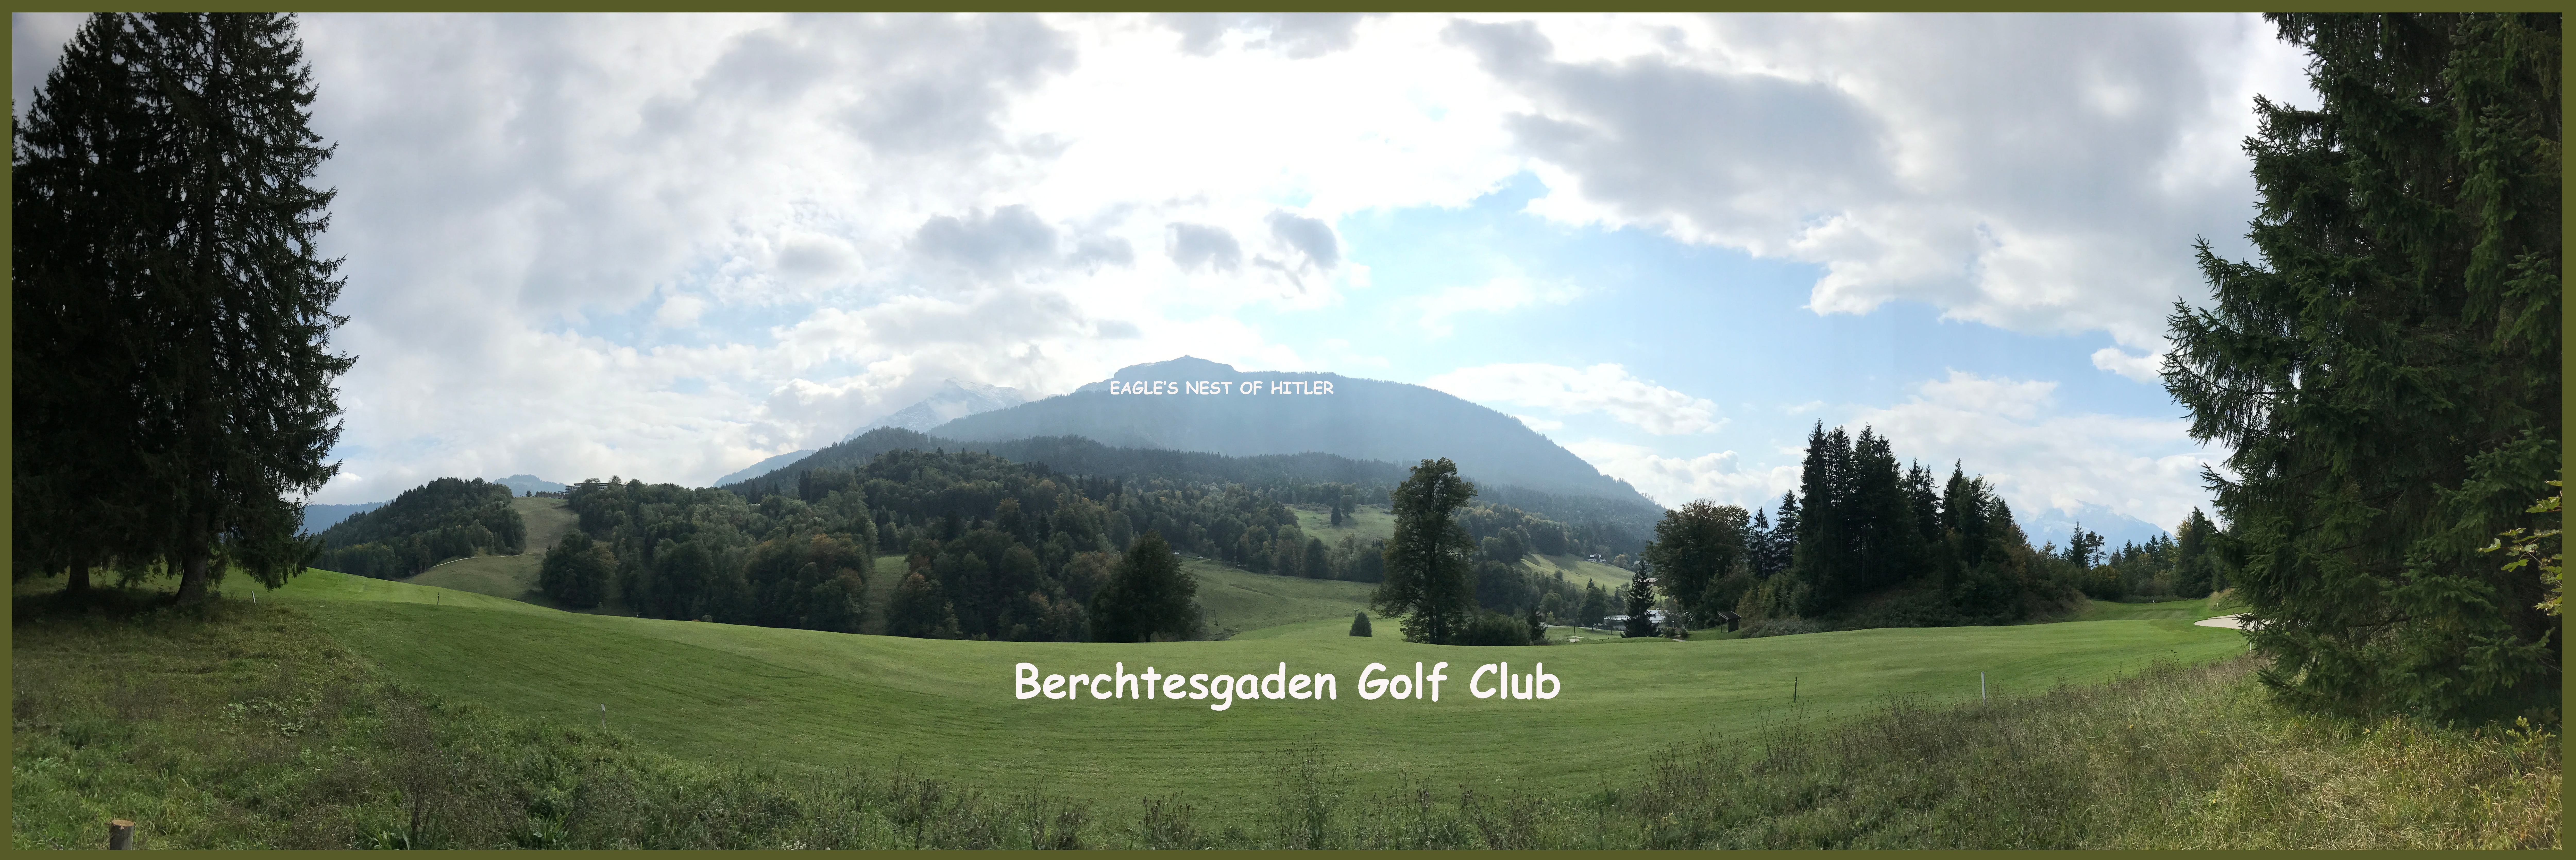 golf course landscape copy